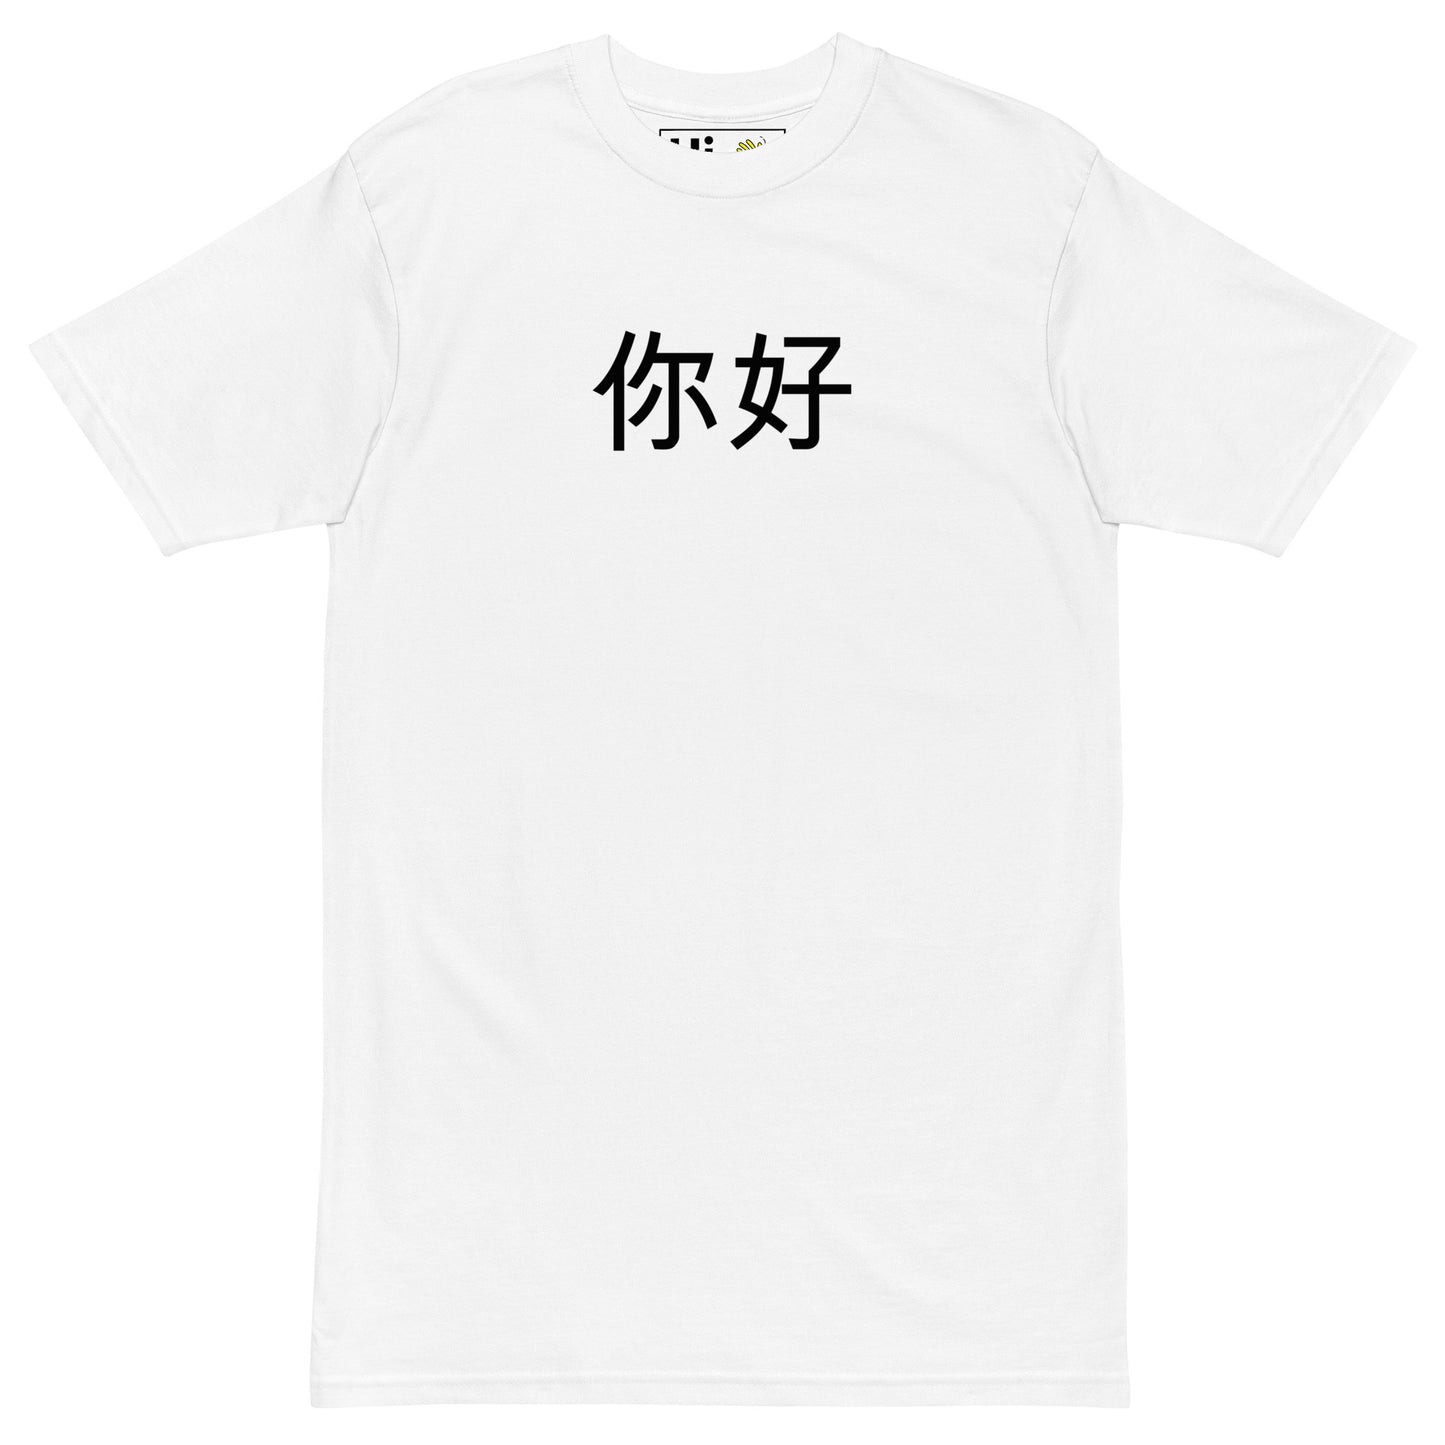 Hi 你好 "Nĭhǎo" Chinese in Pinyin